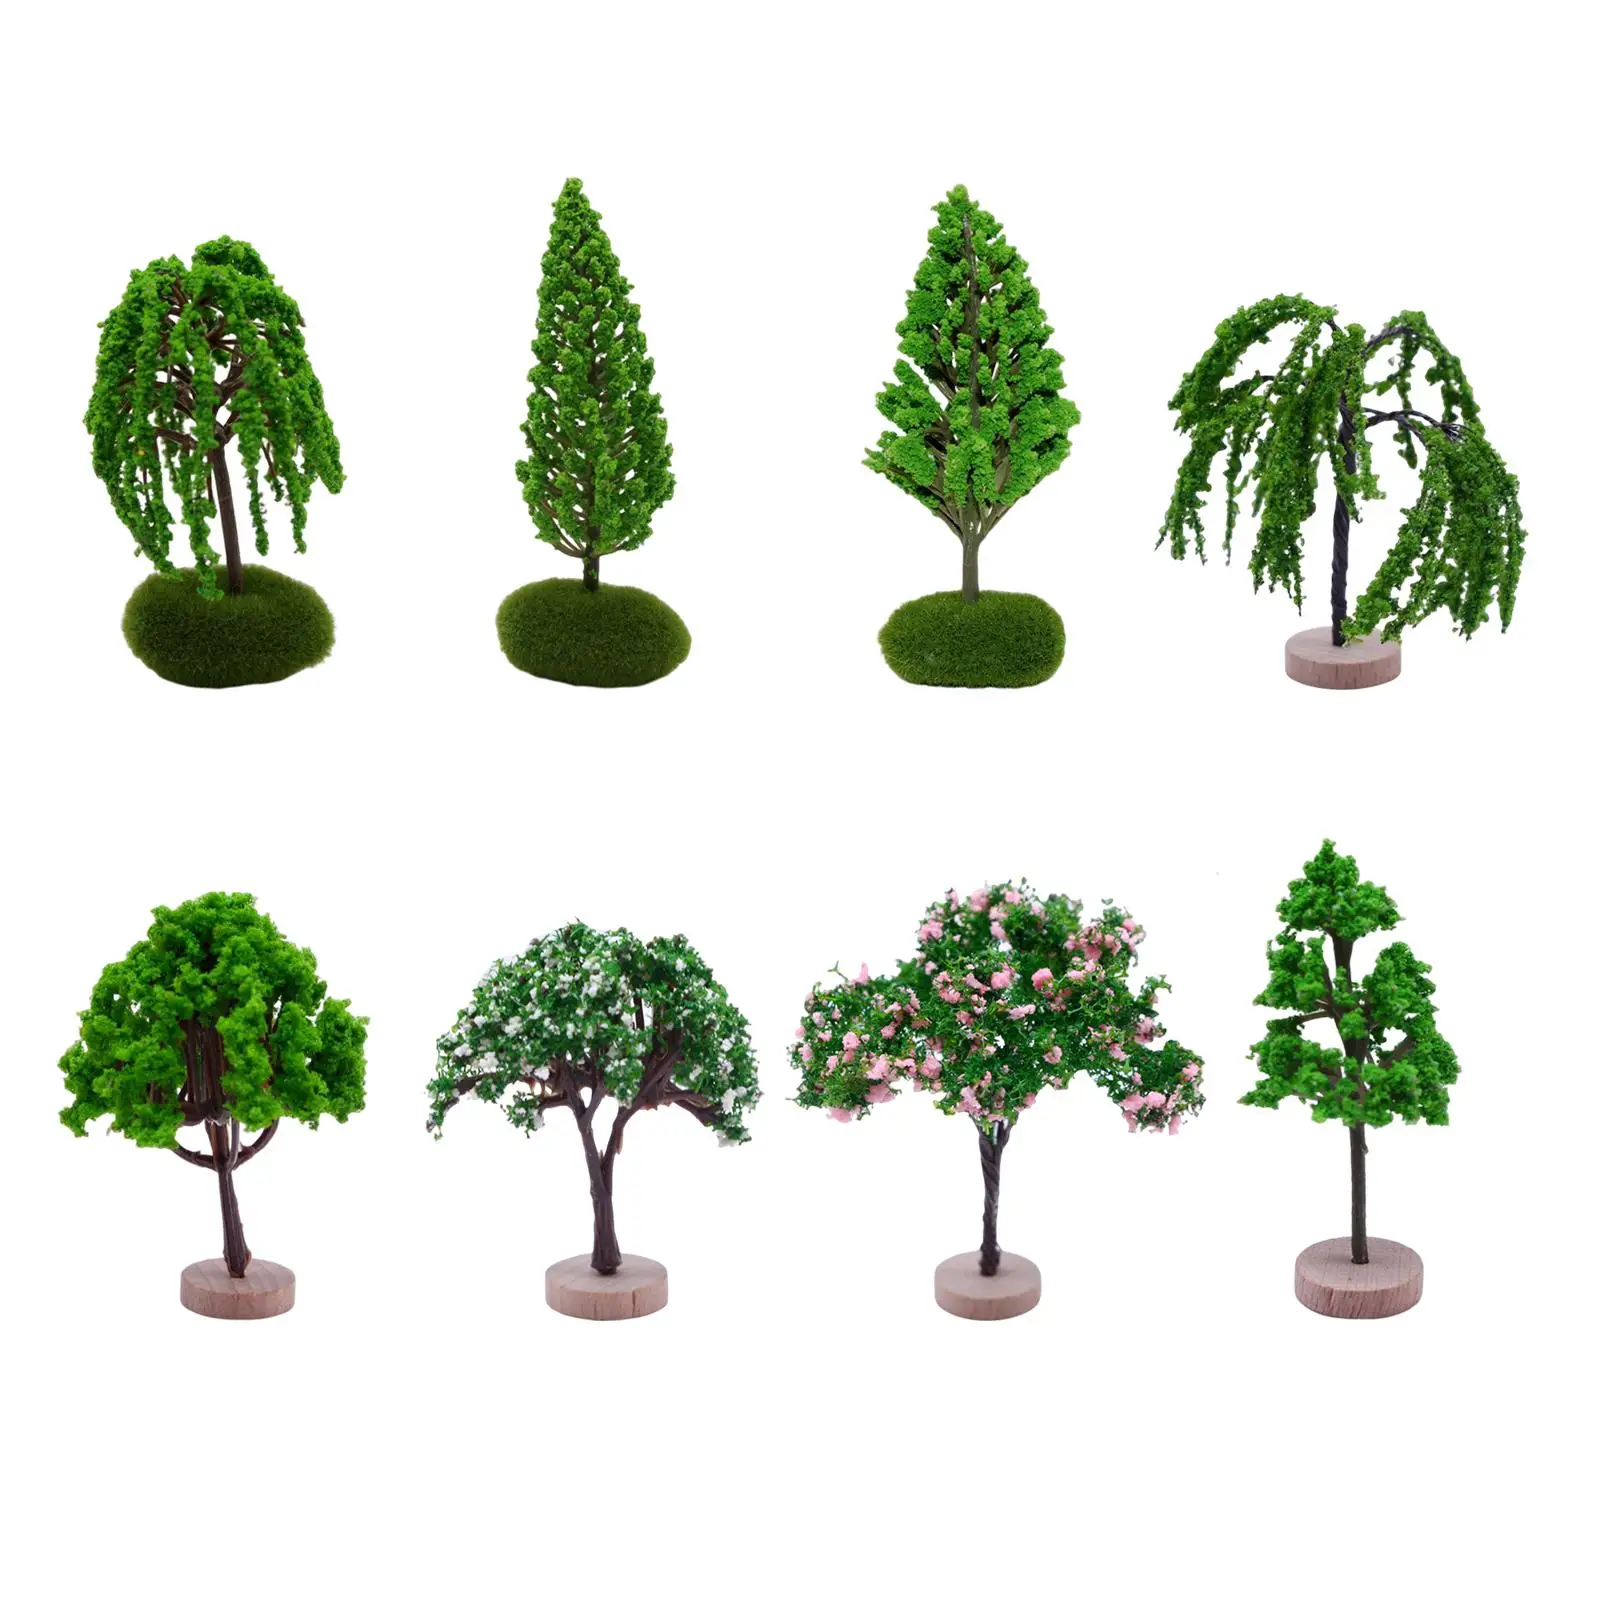 

Аксессуары для моделирования деревьев DIY, искусственный пейзаж, архитектура миниатюрные деревья Fairy